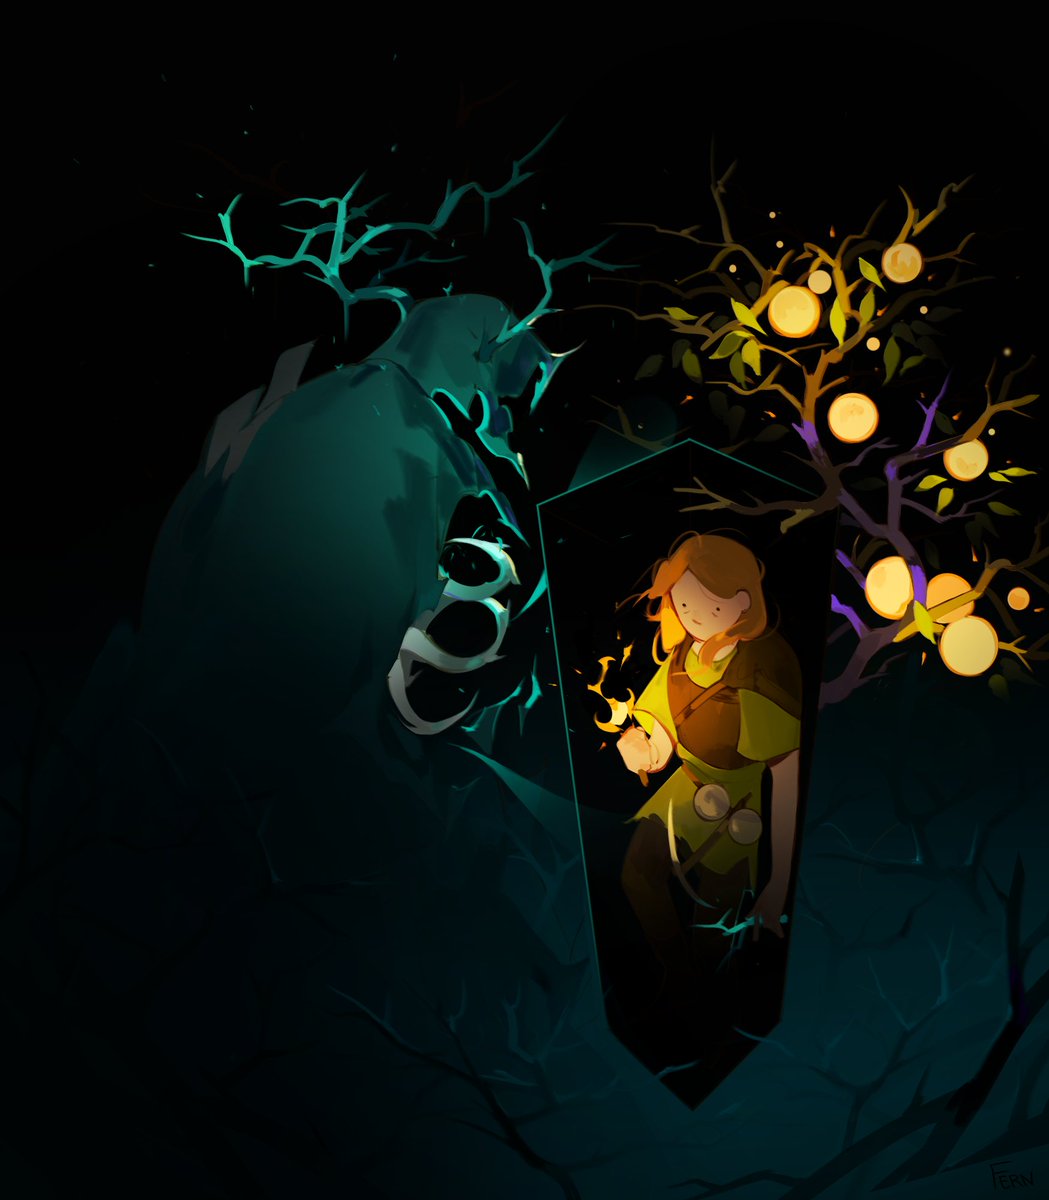 「[ Warden approaches ]#minecraft #minecra」|fernのイラスト